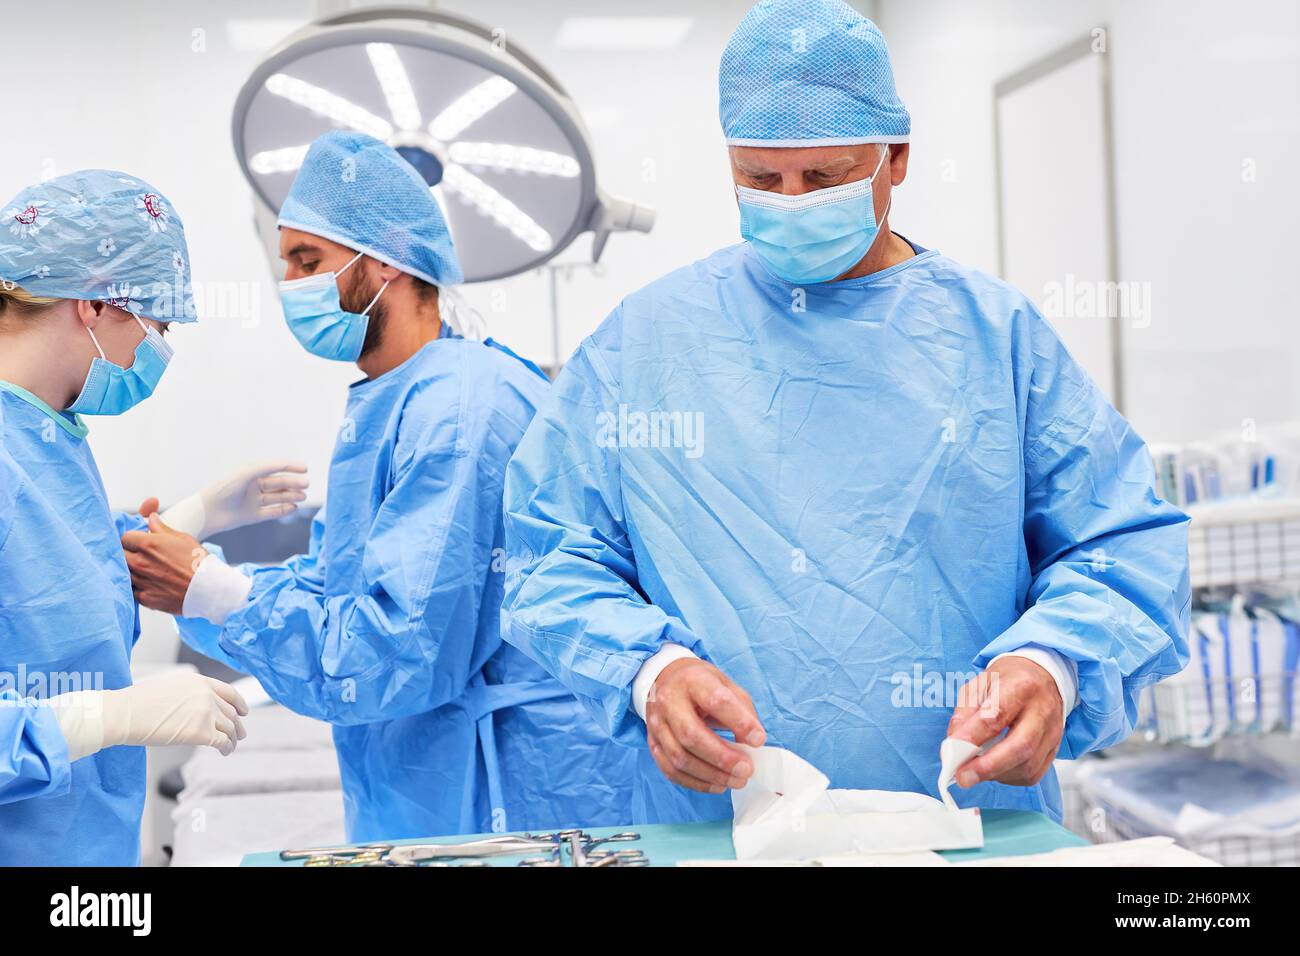 Los médicos se unen en ropa protectora preparando una operación en la clínica de accidentes Foto de stock